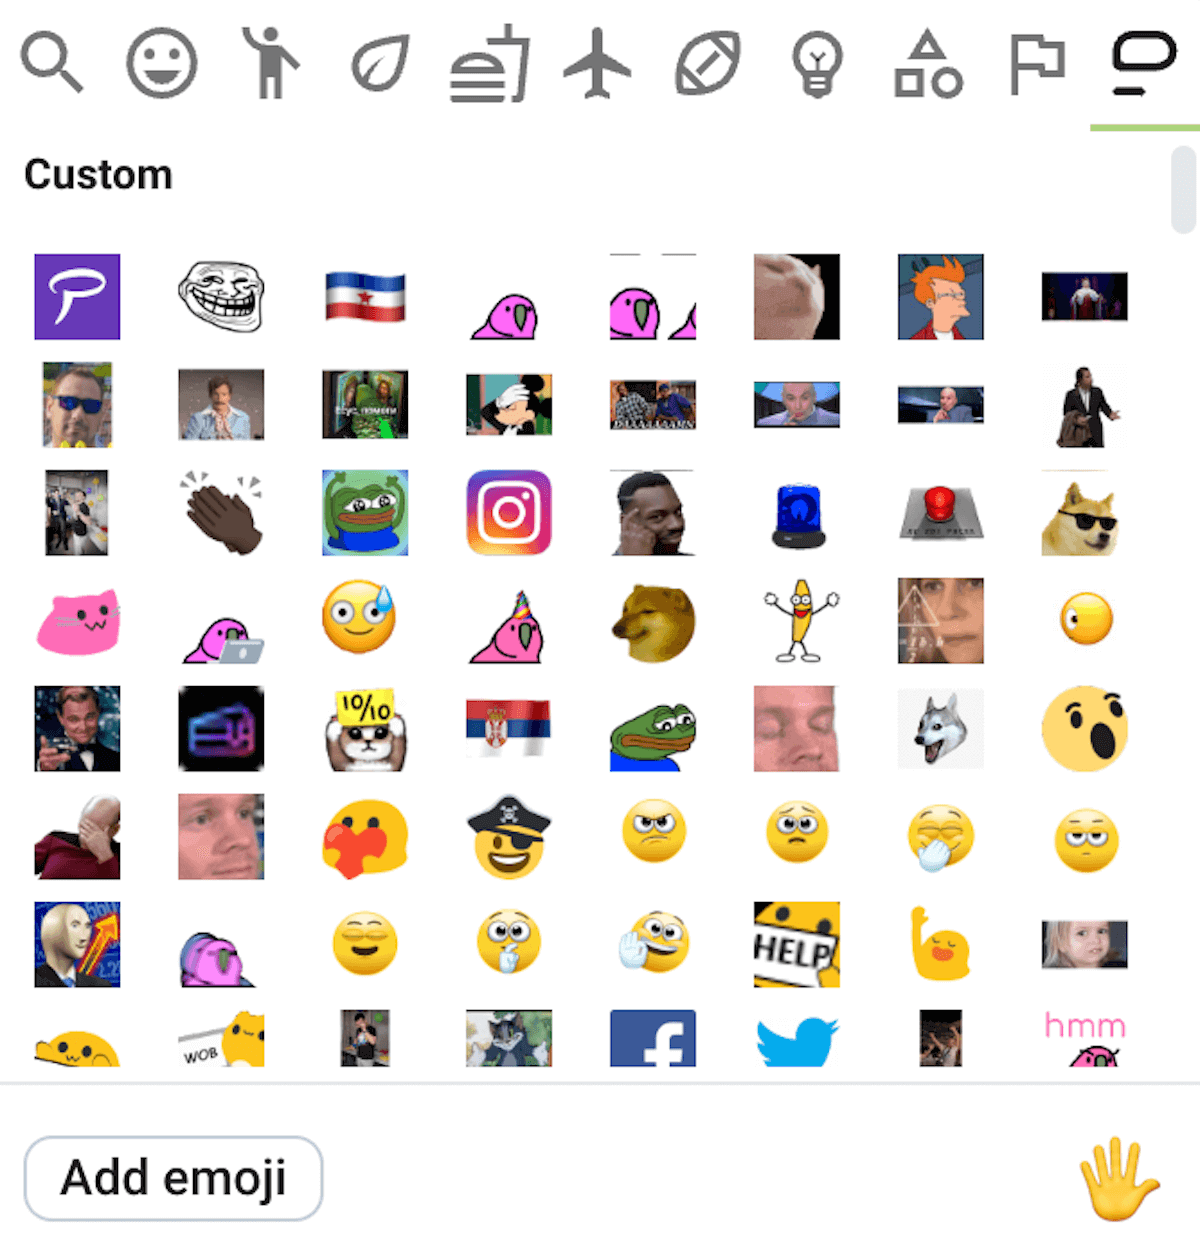 Customizable Pumble emojis